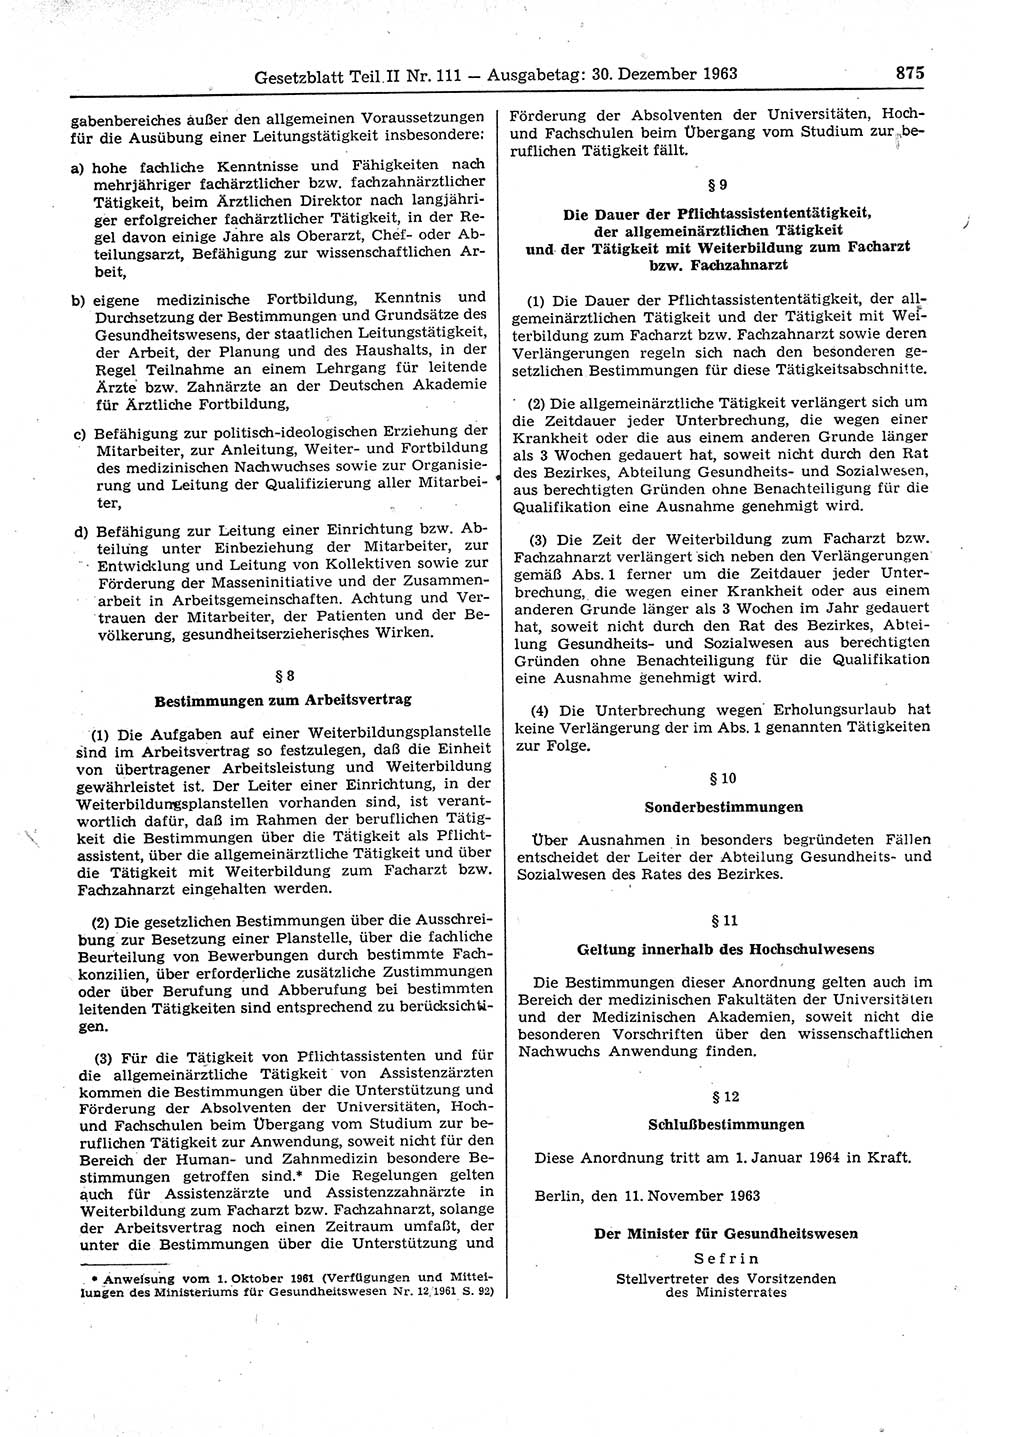 Gesetzblatt (GBl.) der Deutschen Demokratischen Republik (DDR) Teil ⅠⅠ 1963, Seite 875 (GBl. DDR ⅠⅠ 1963, S. 875)